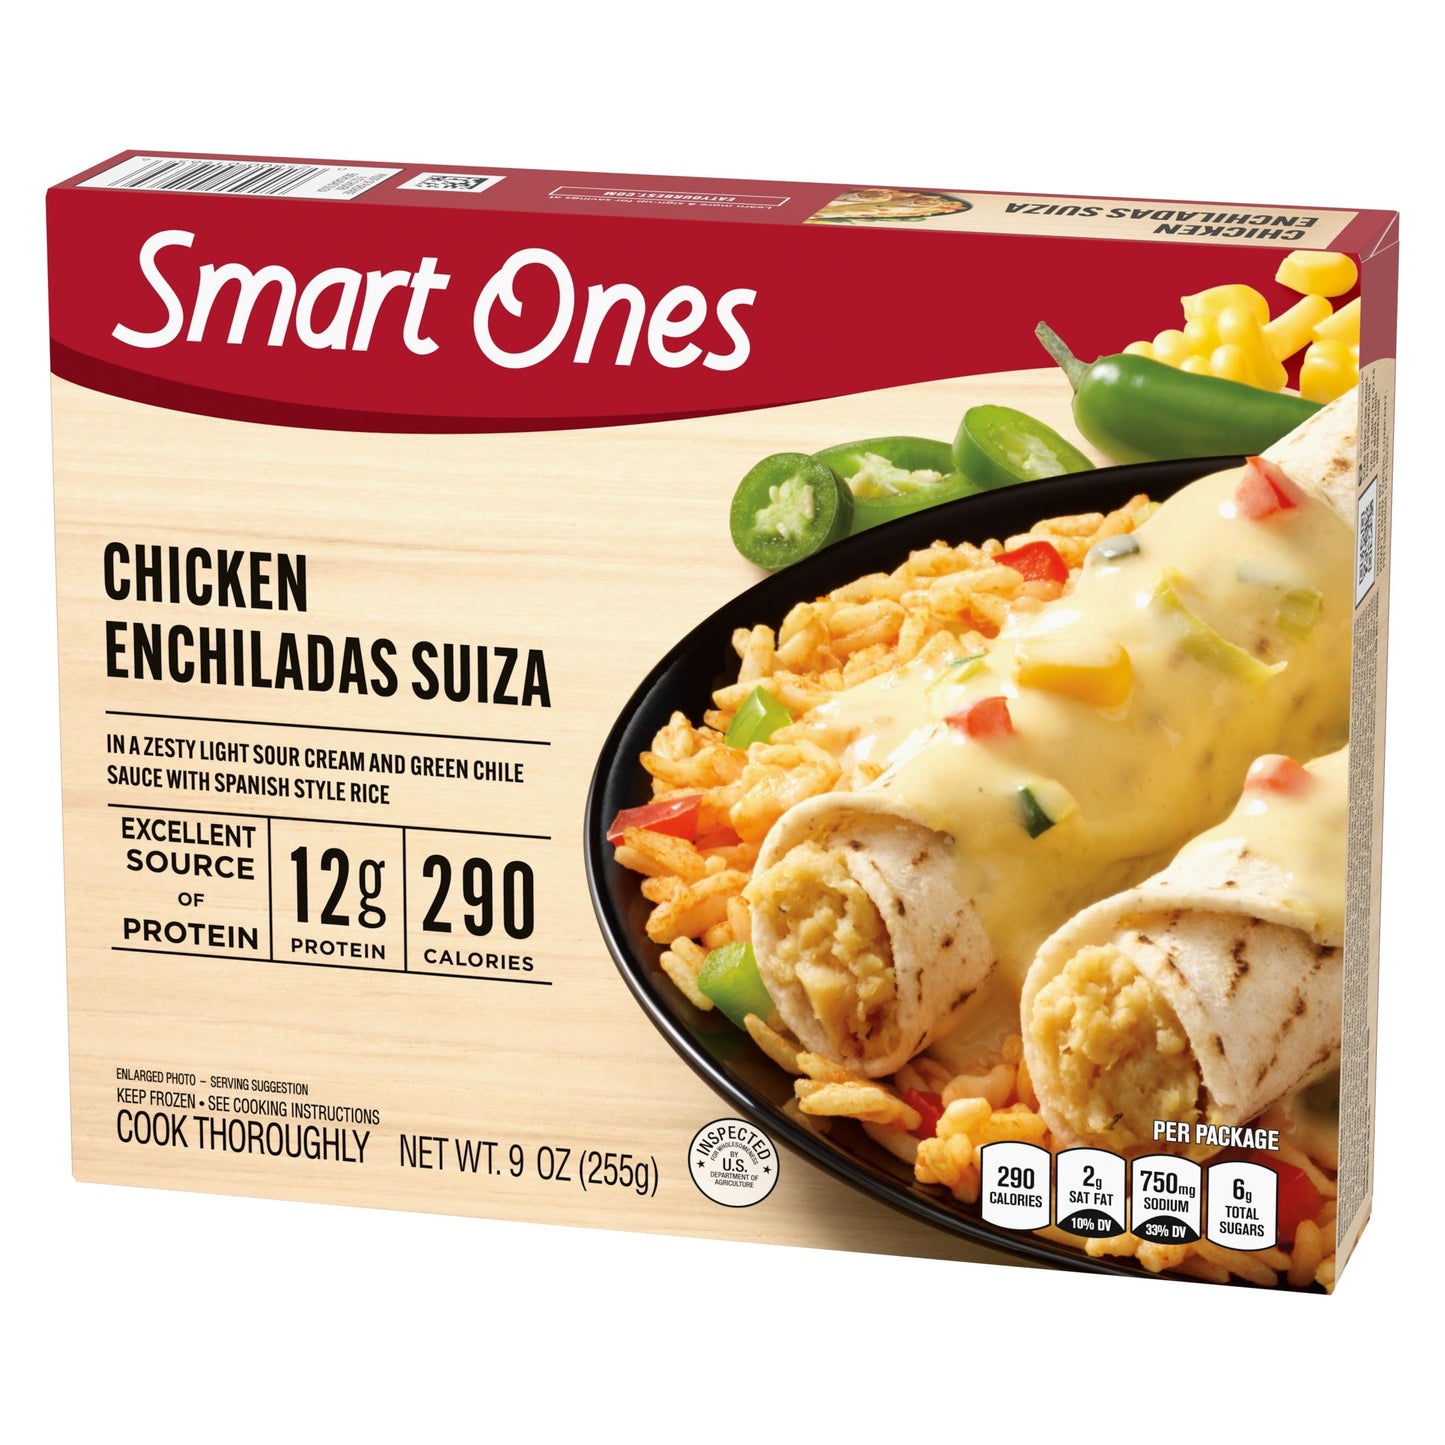 Smart Ones Chicken Enchiladas Suiza Frozen Meal, 9 Oz Box